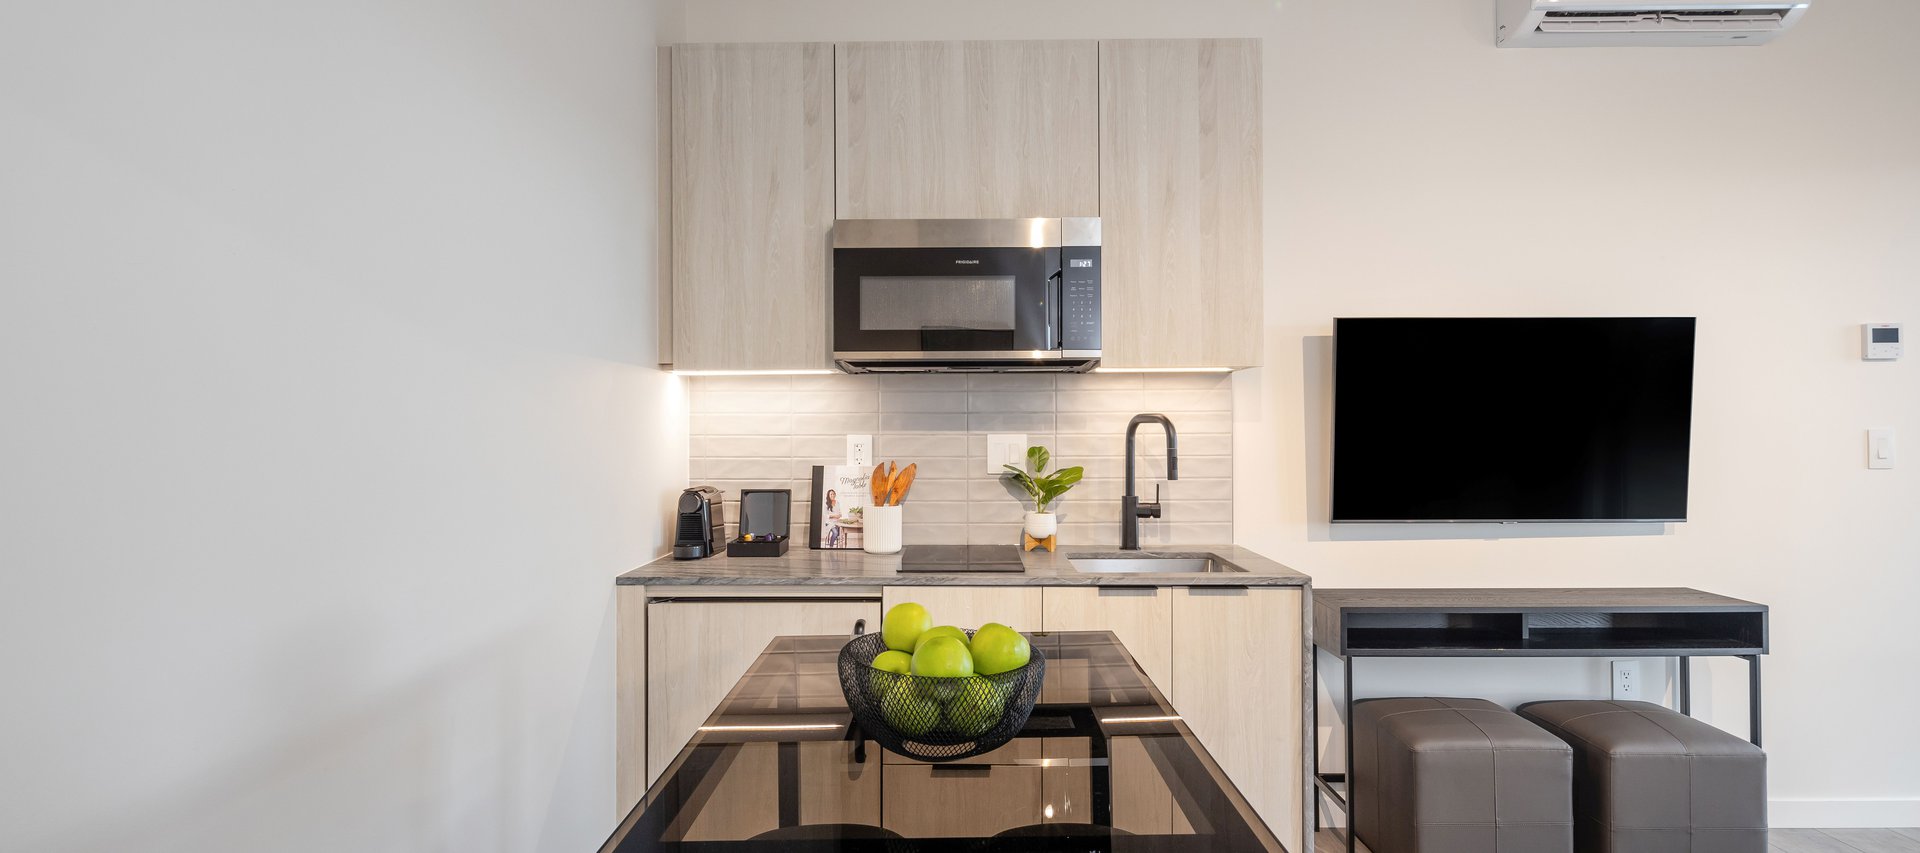 junior one bedroom suite features modern half kitchen with nespresso machine at steveston waterfront hotel